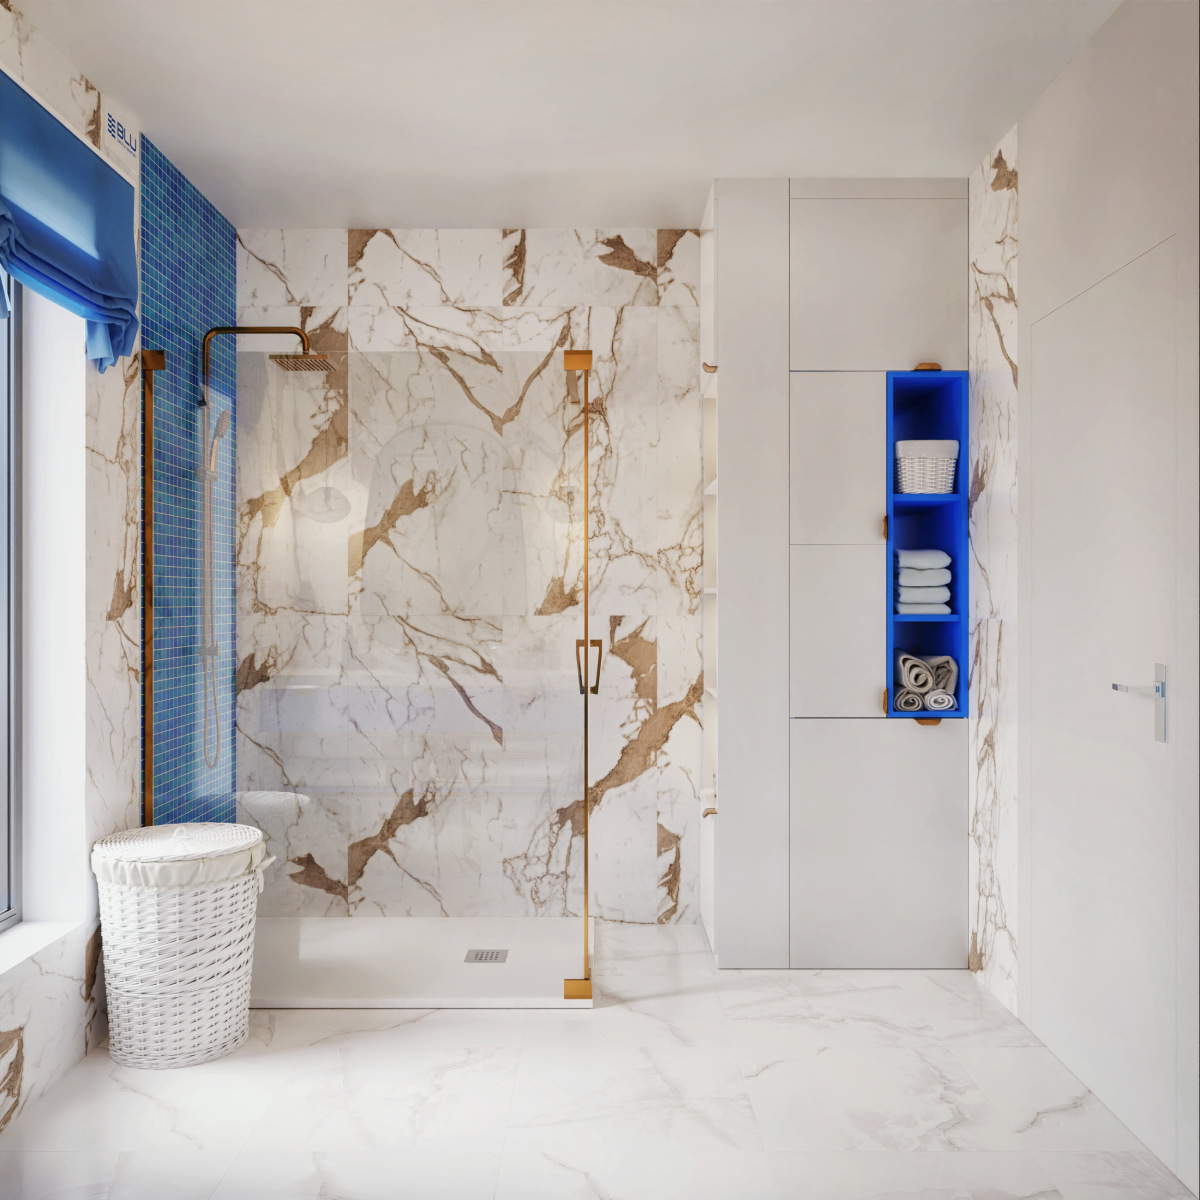 Płytki imitujące marmur Azario Stone Satuario w aranżacji nowoczesnej łazienki mozaiką i złotymi dodatkami